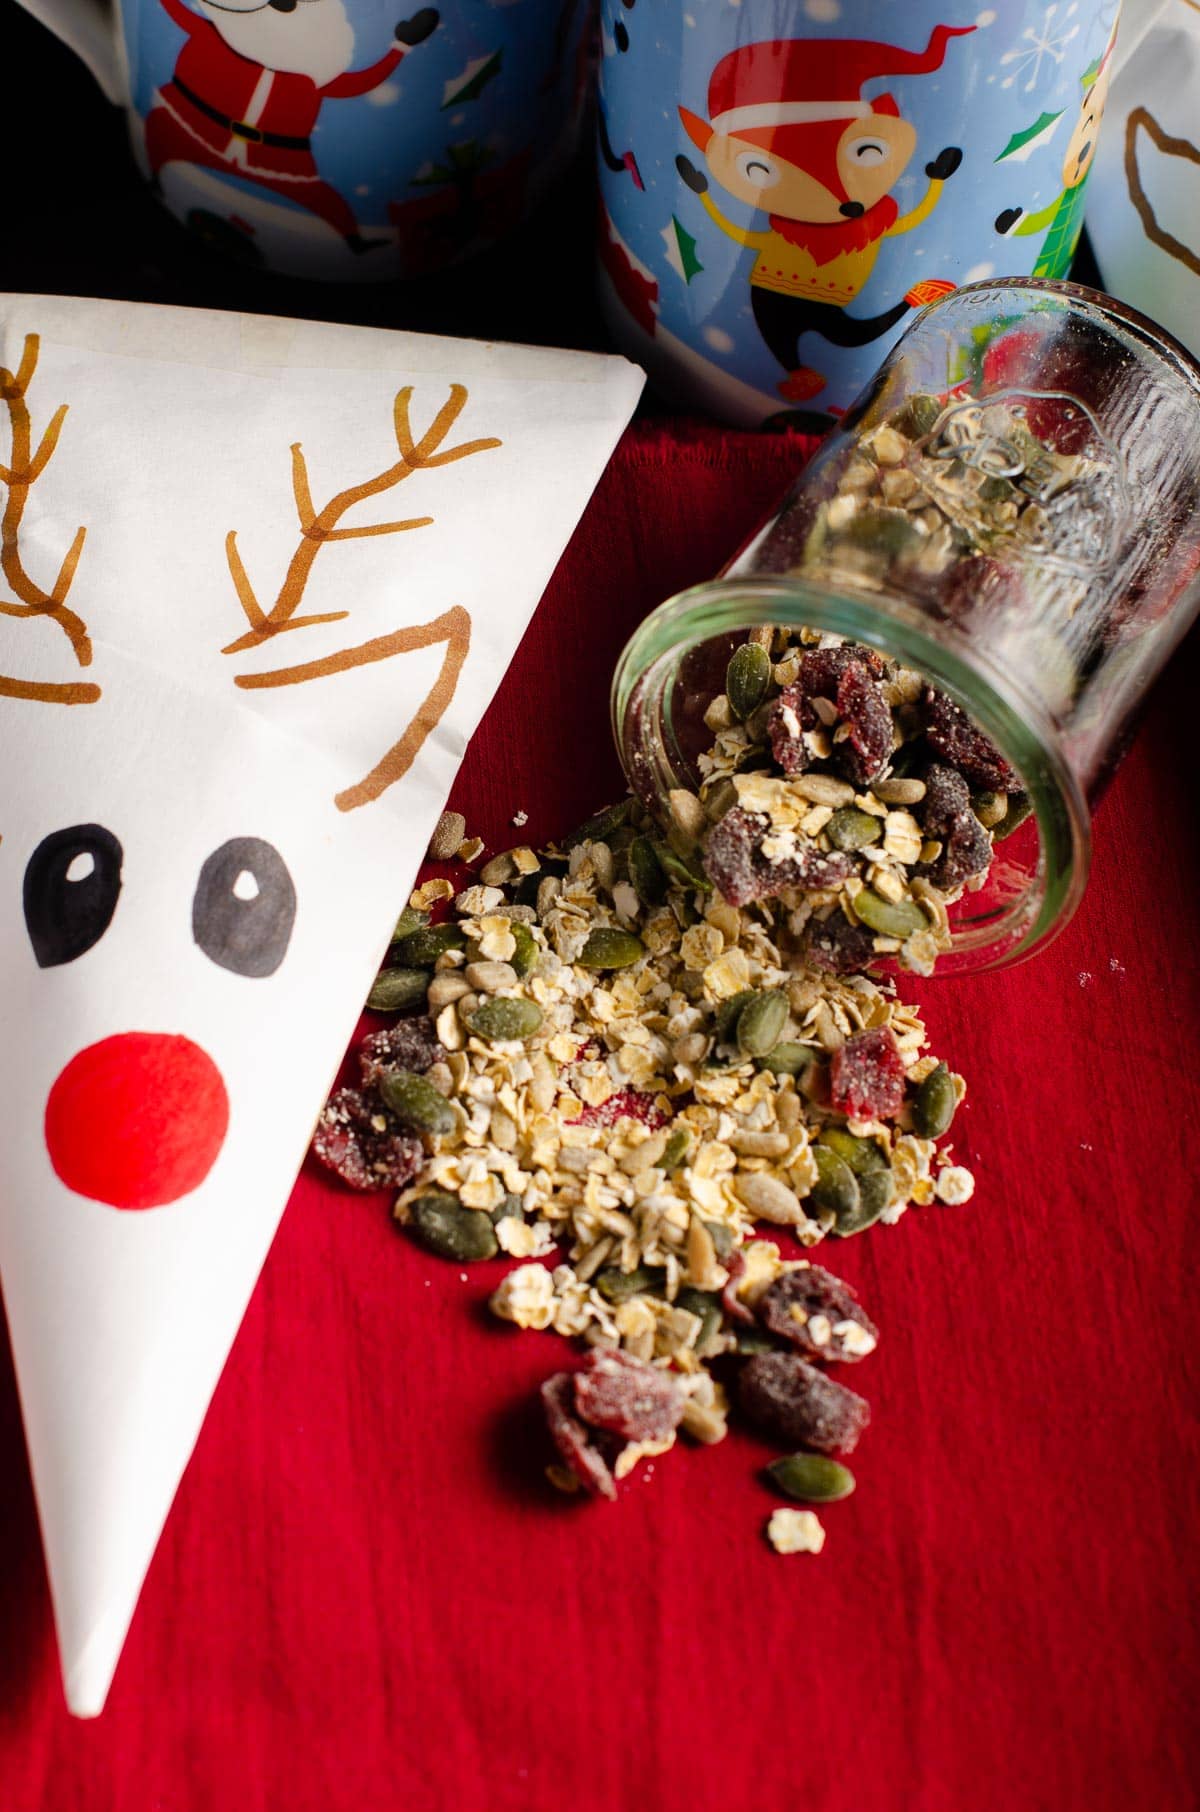 Reindeer Food Recipe